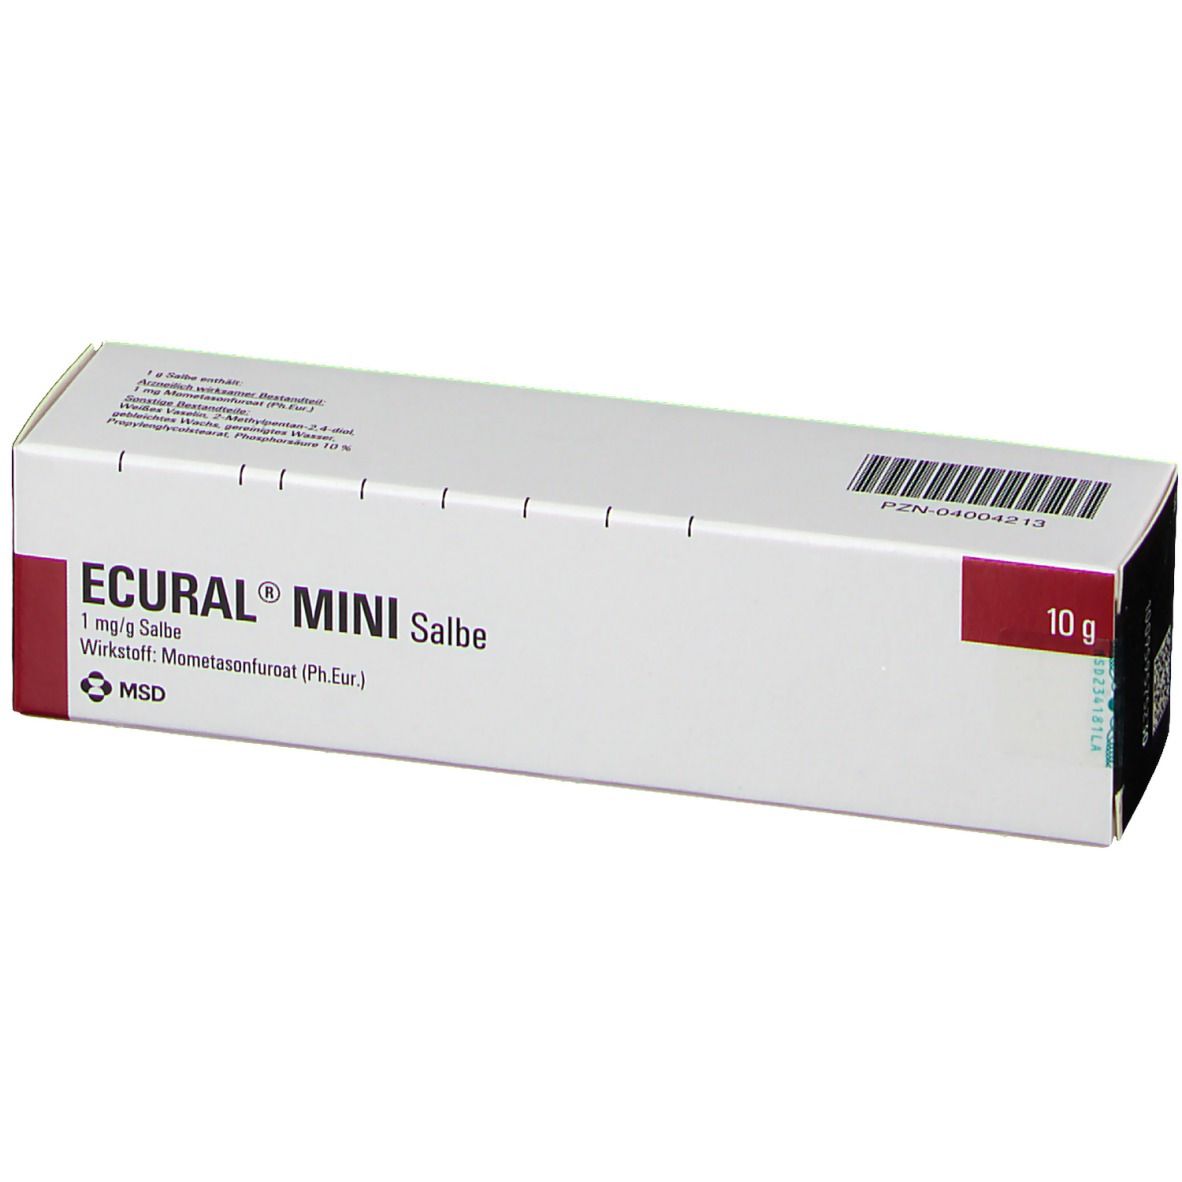 ECURAL® MINI Salbe 1 mg/ml